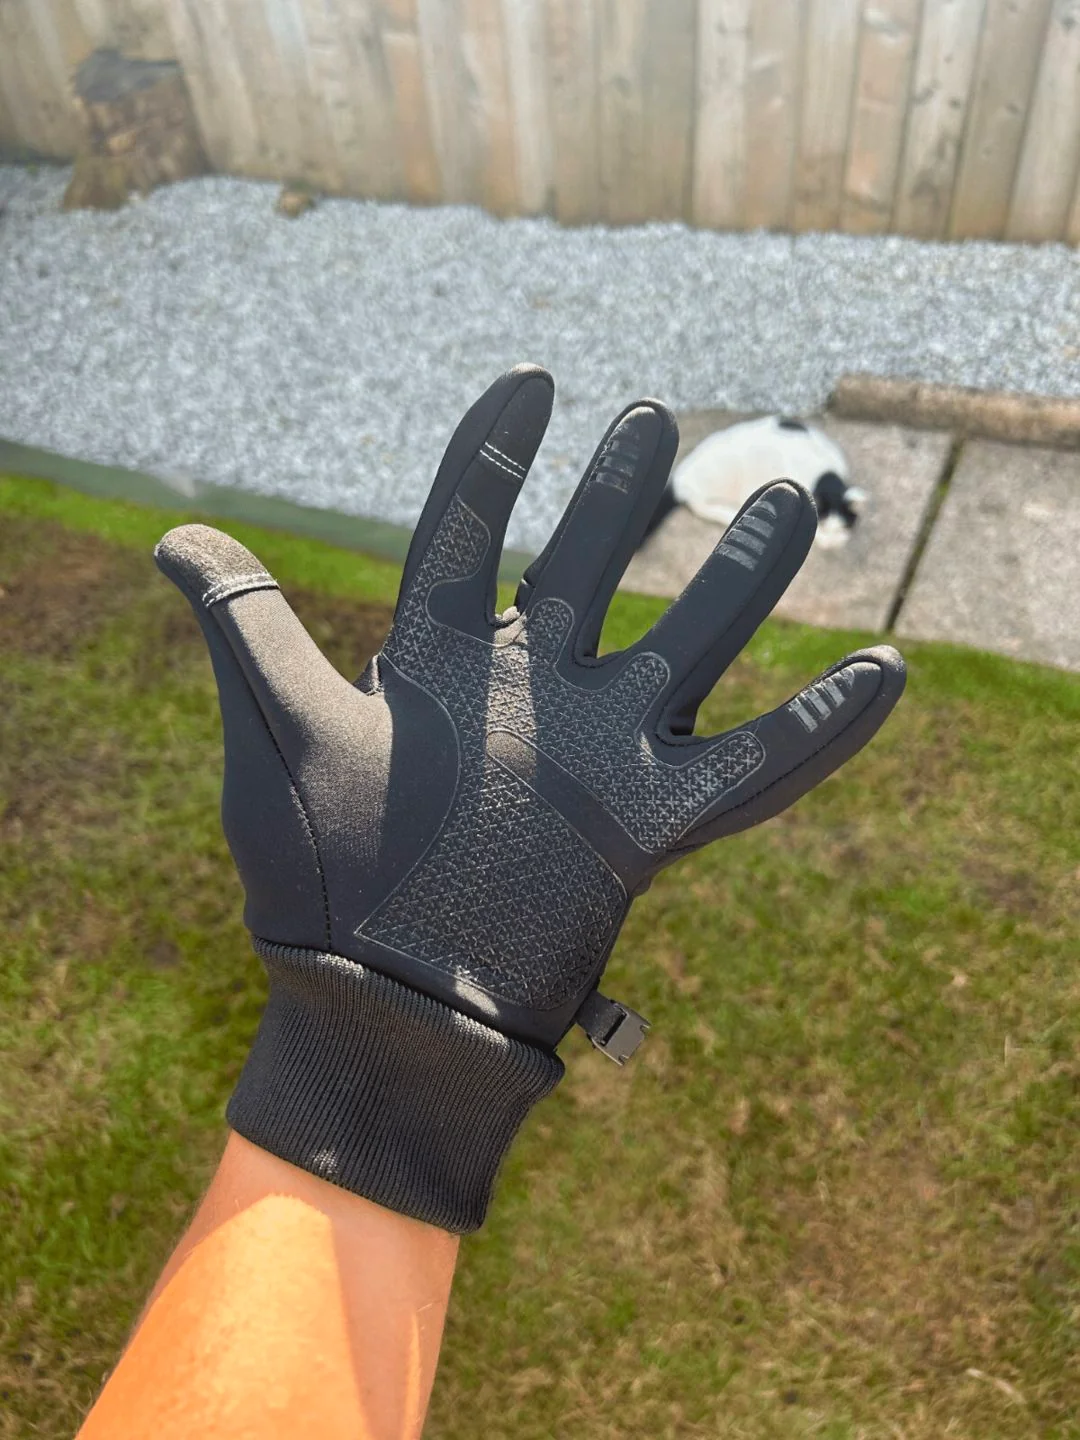 ComfyHands - Thermal Gloves